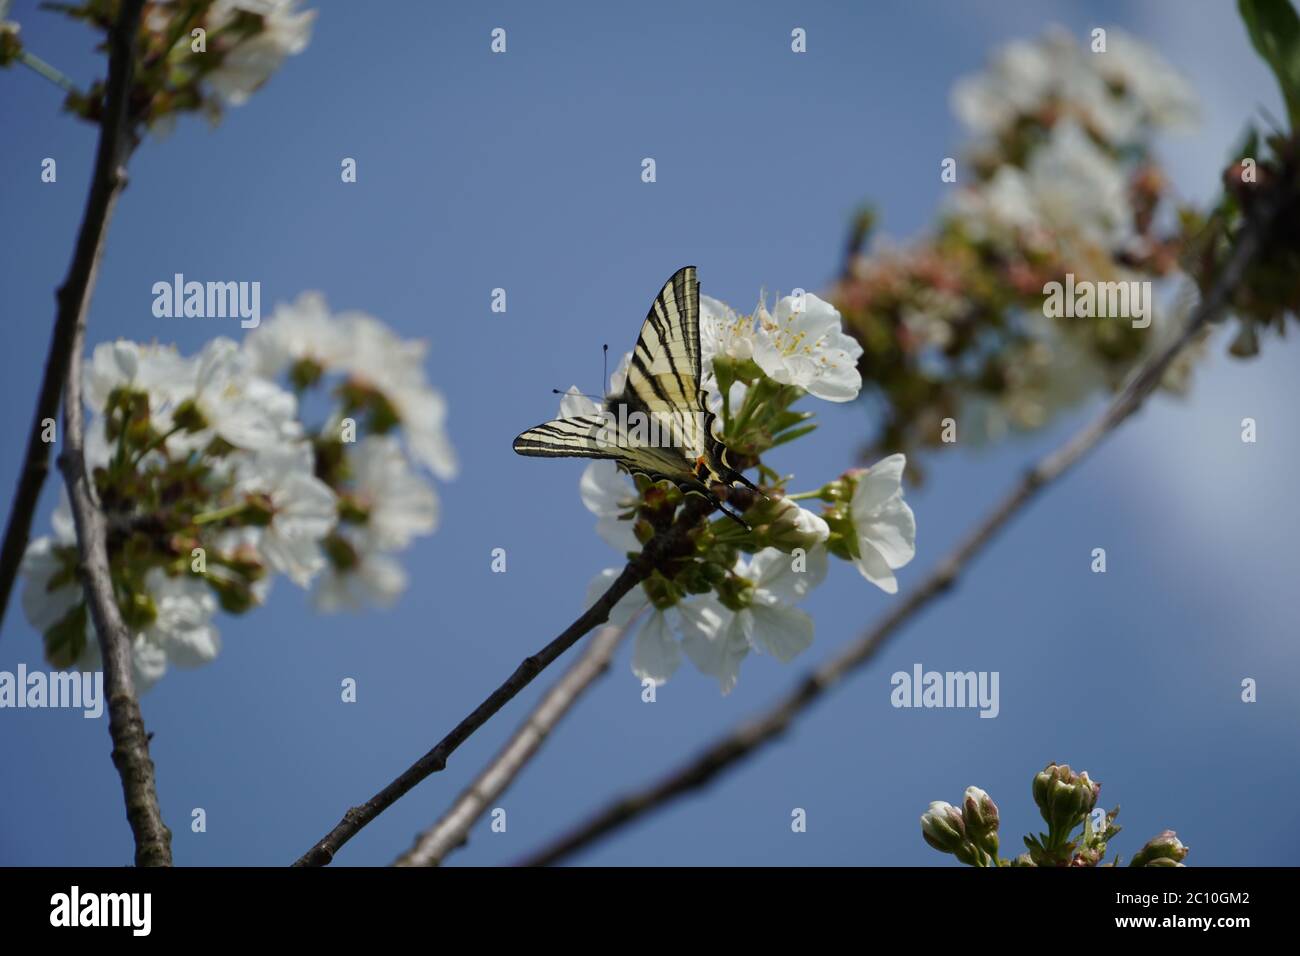 Old World swallowtail on cherry tree Stock Photo